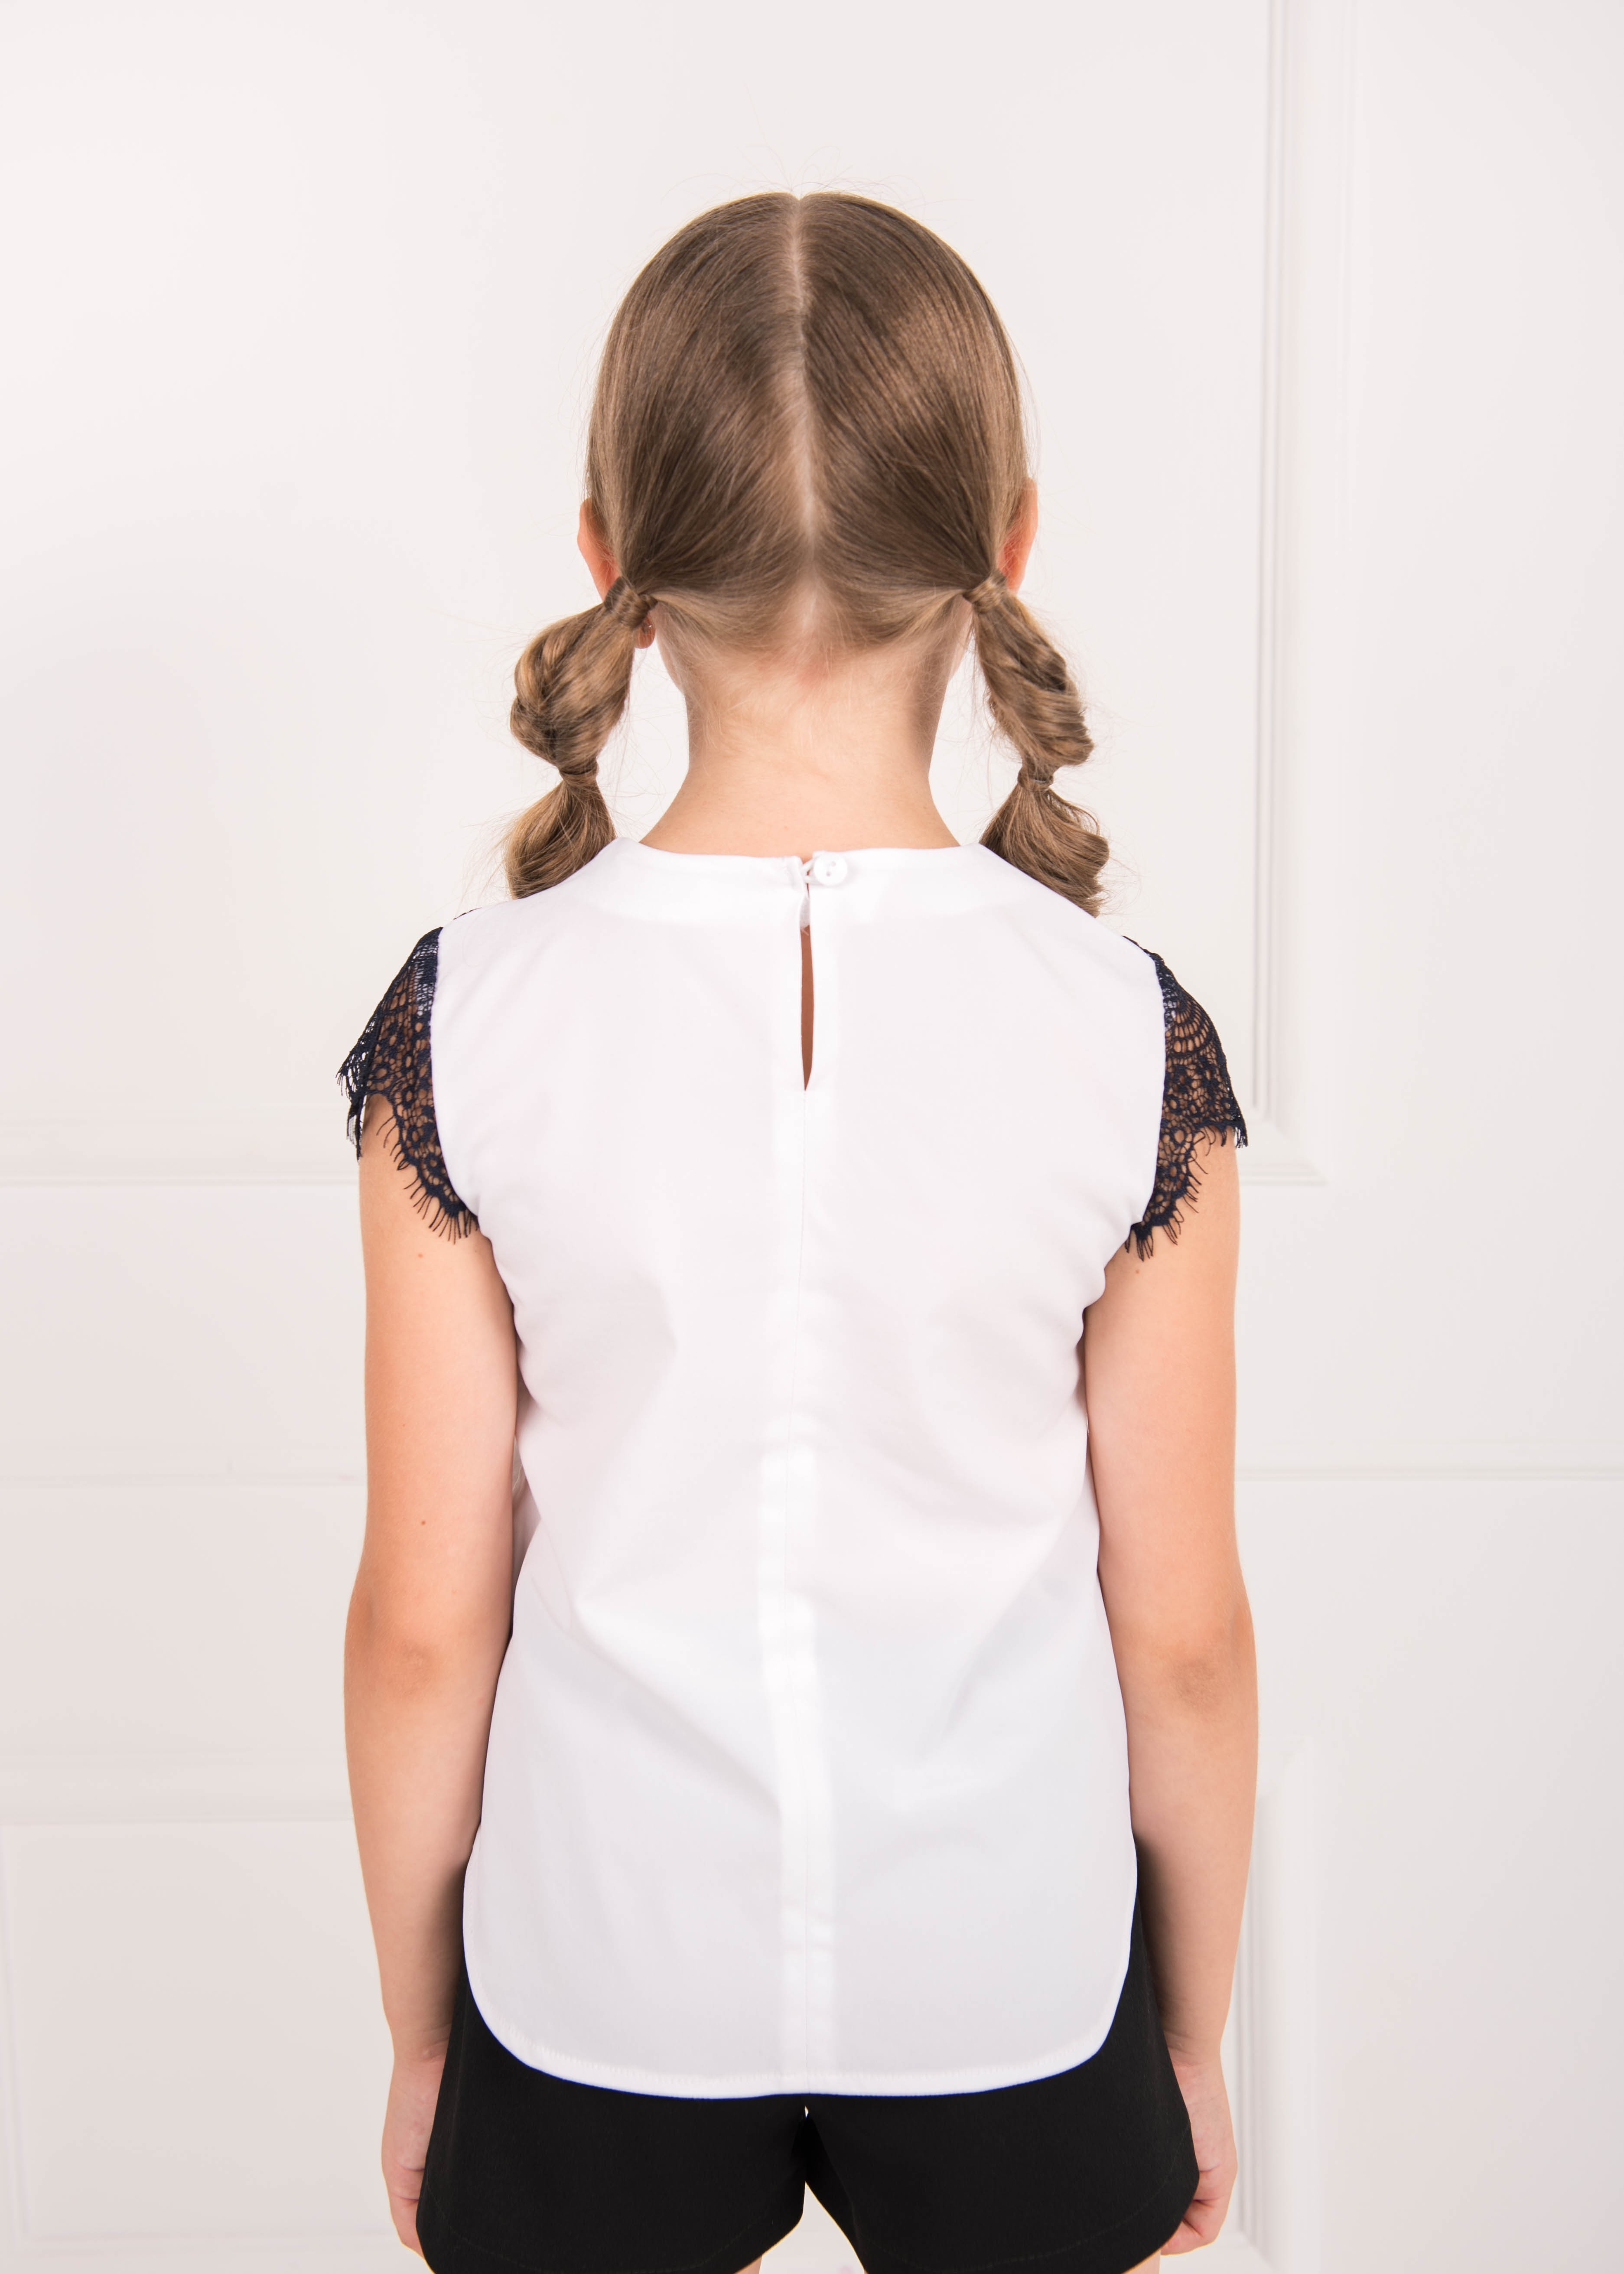 Блуза для девочки с кружевом белая 02682 в интернет-магазине